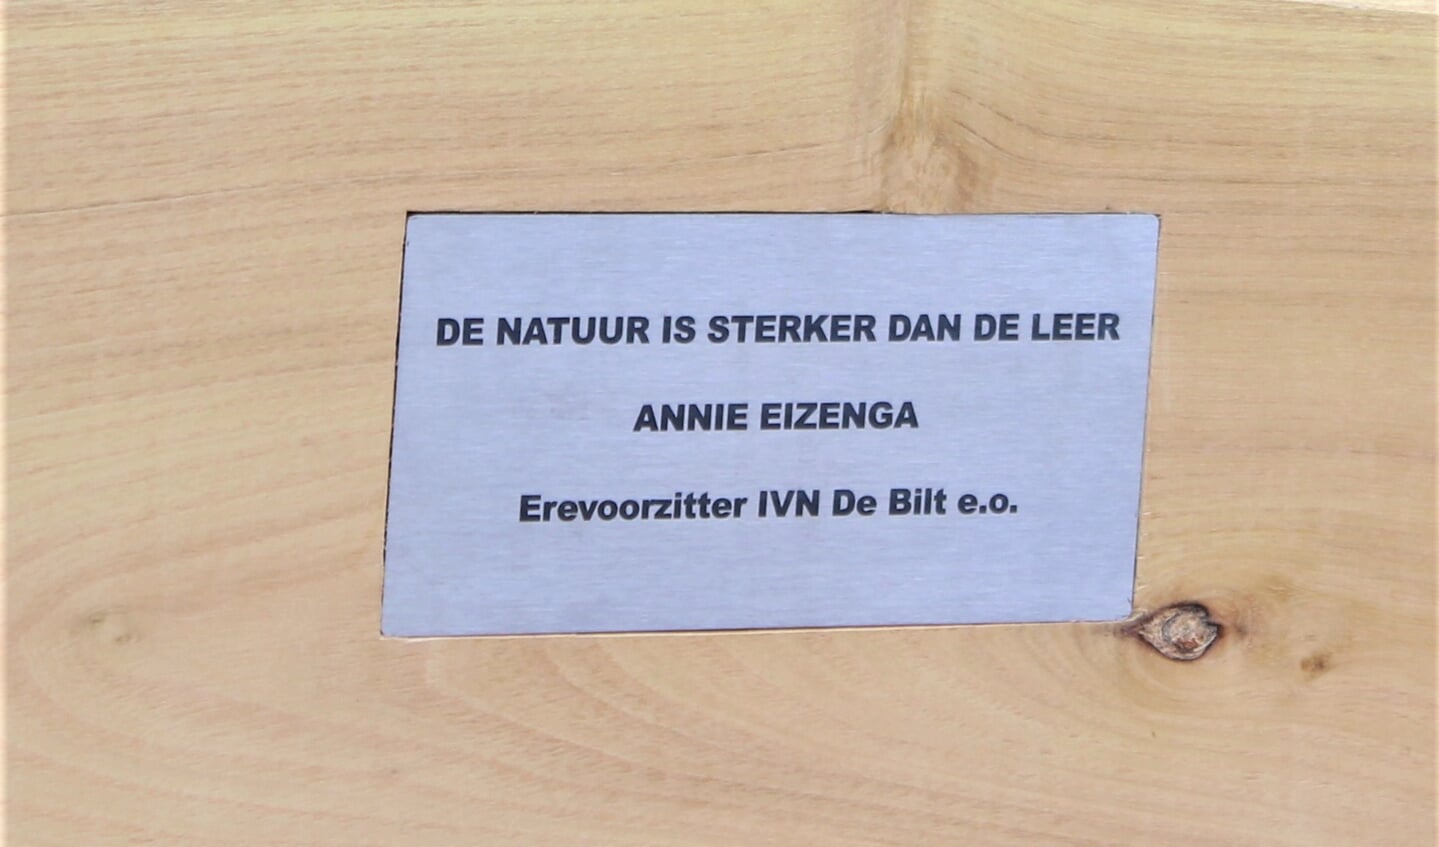 In het bankje is een naambordje aangebracht met een gezegde van Annie Eizinga: ‘De natuur is sterker dan de leer’.